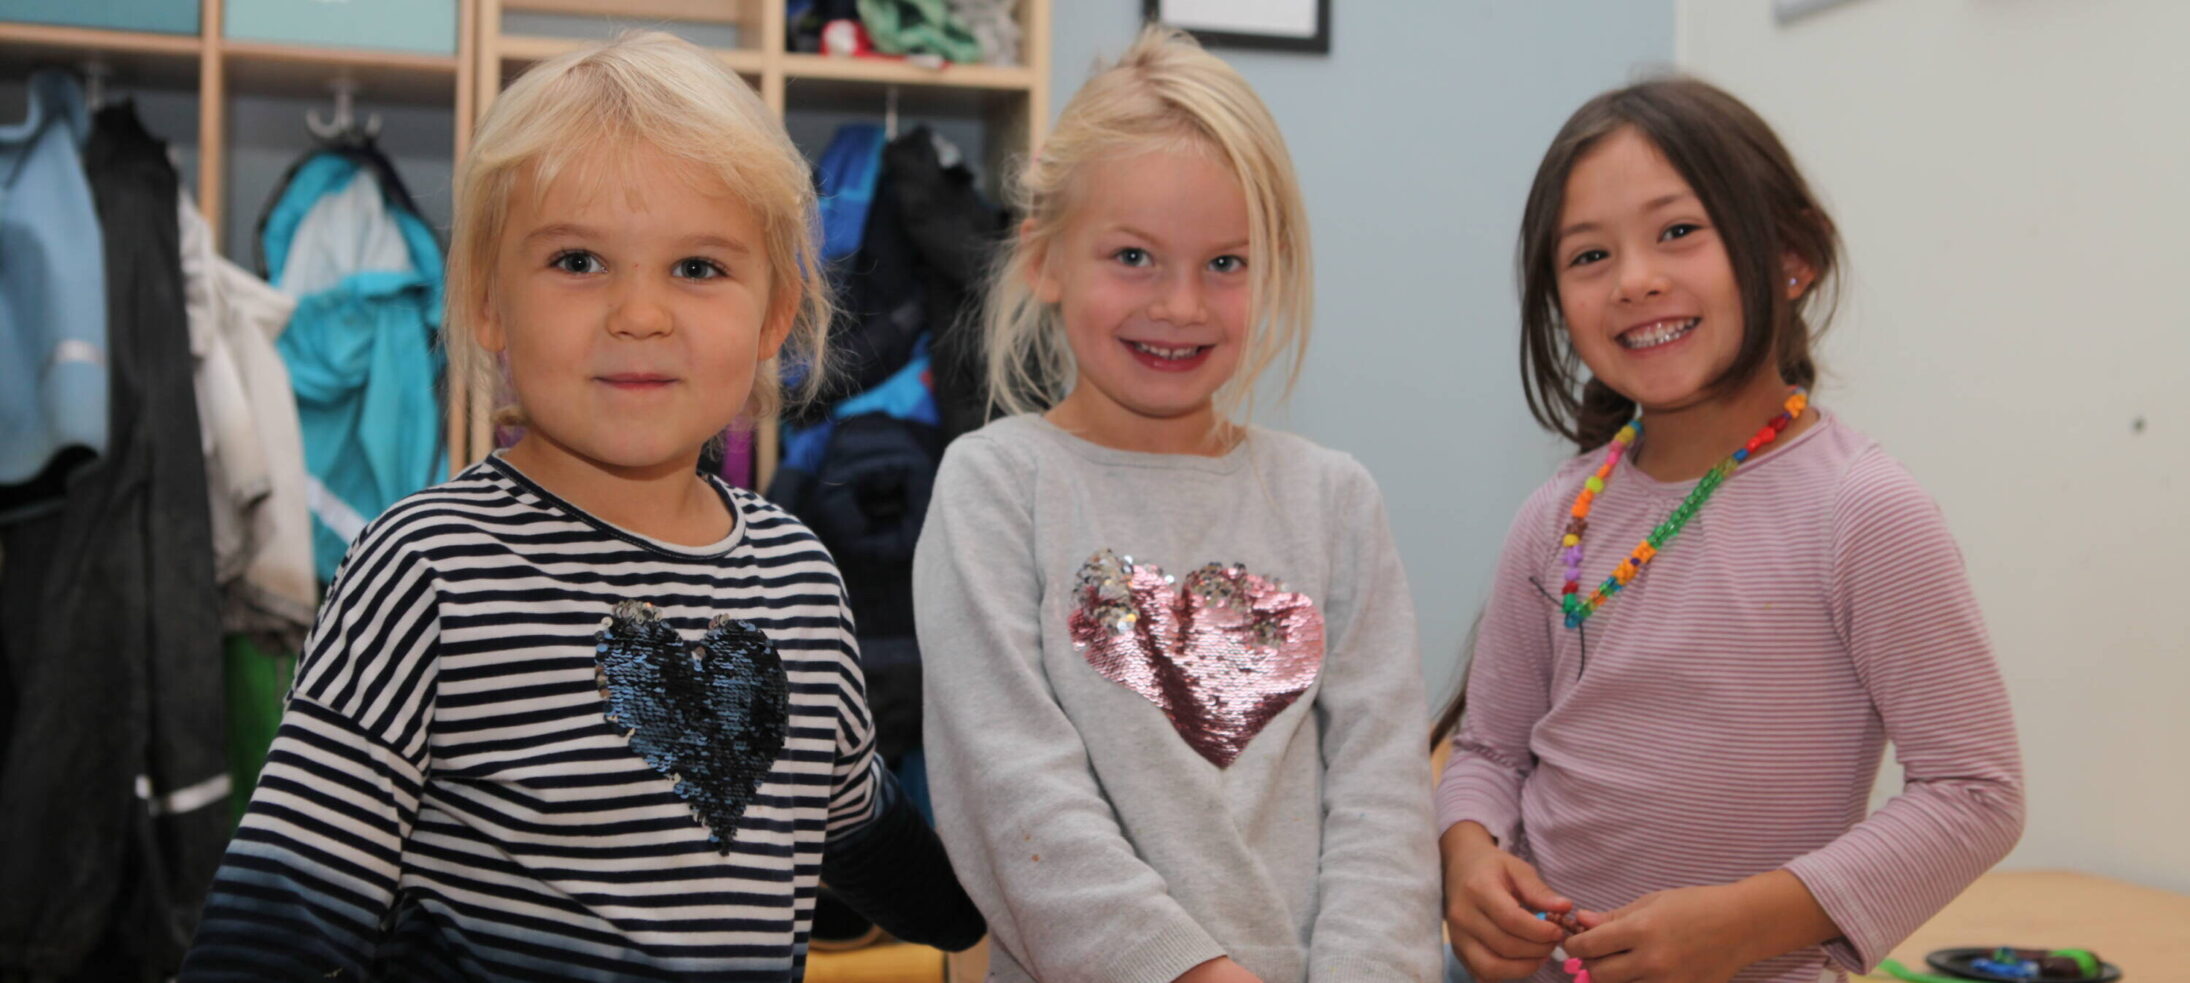 Tre små flickor poserar i kapprummet på förskolan.